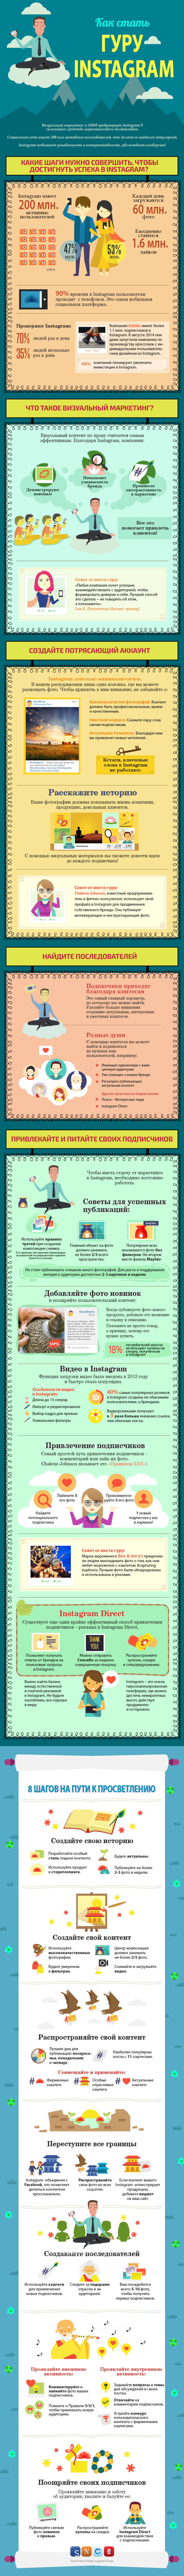 Как стать гуру Instagram. Инфографика - 1